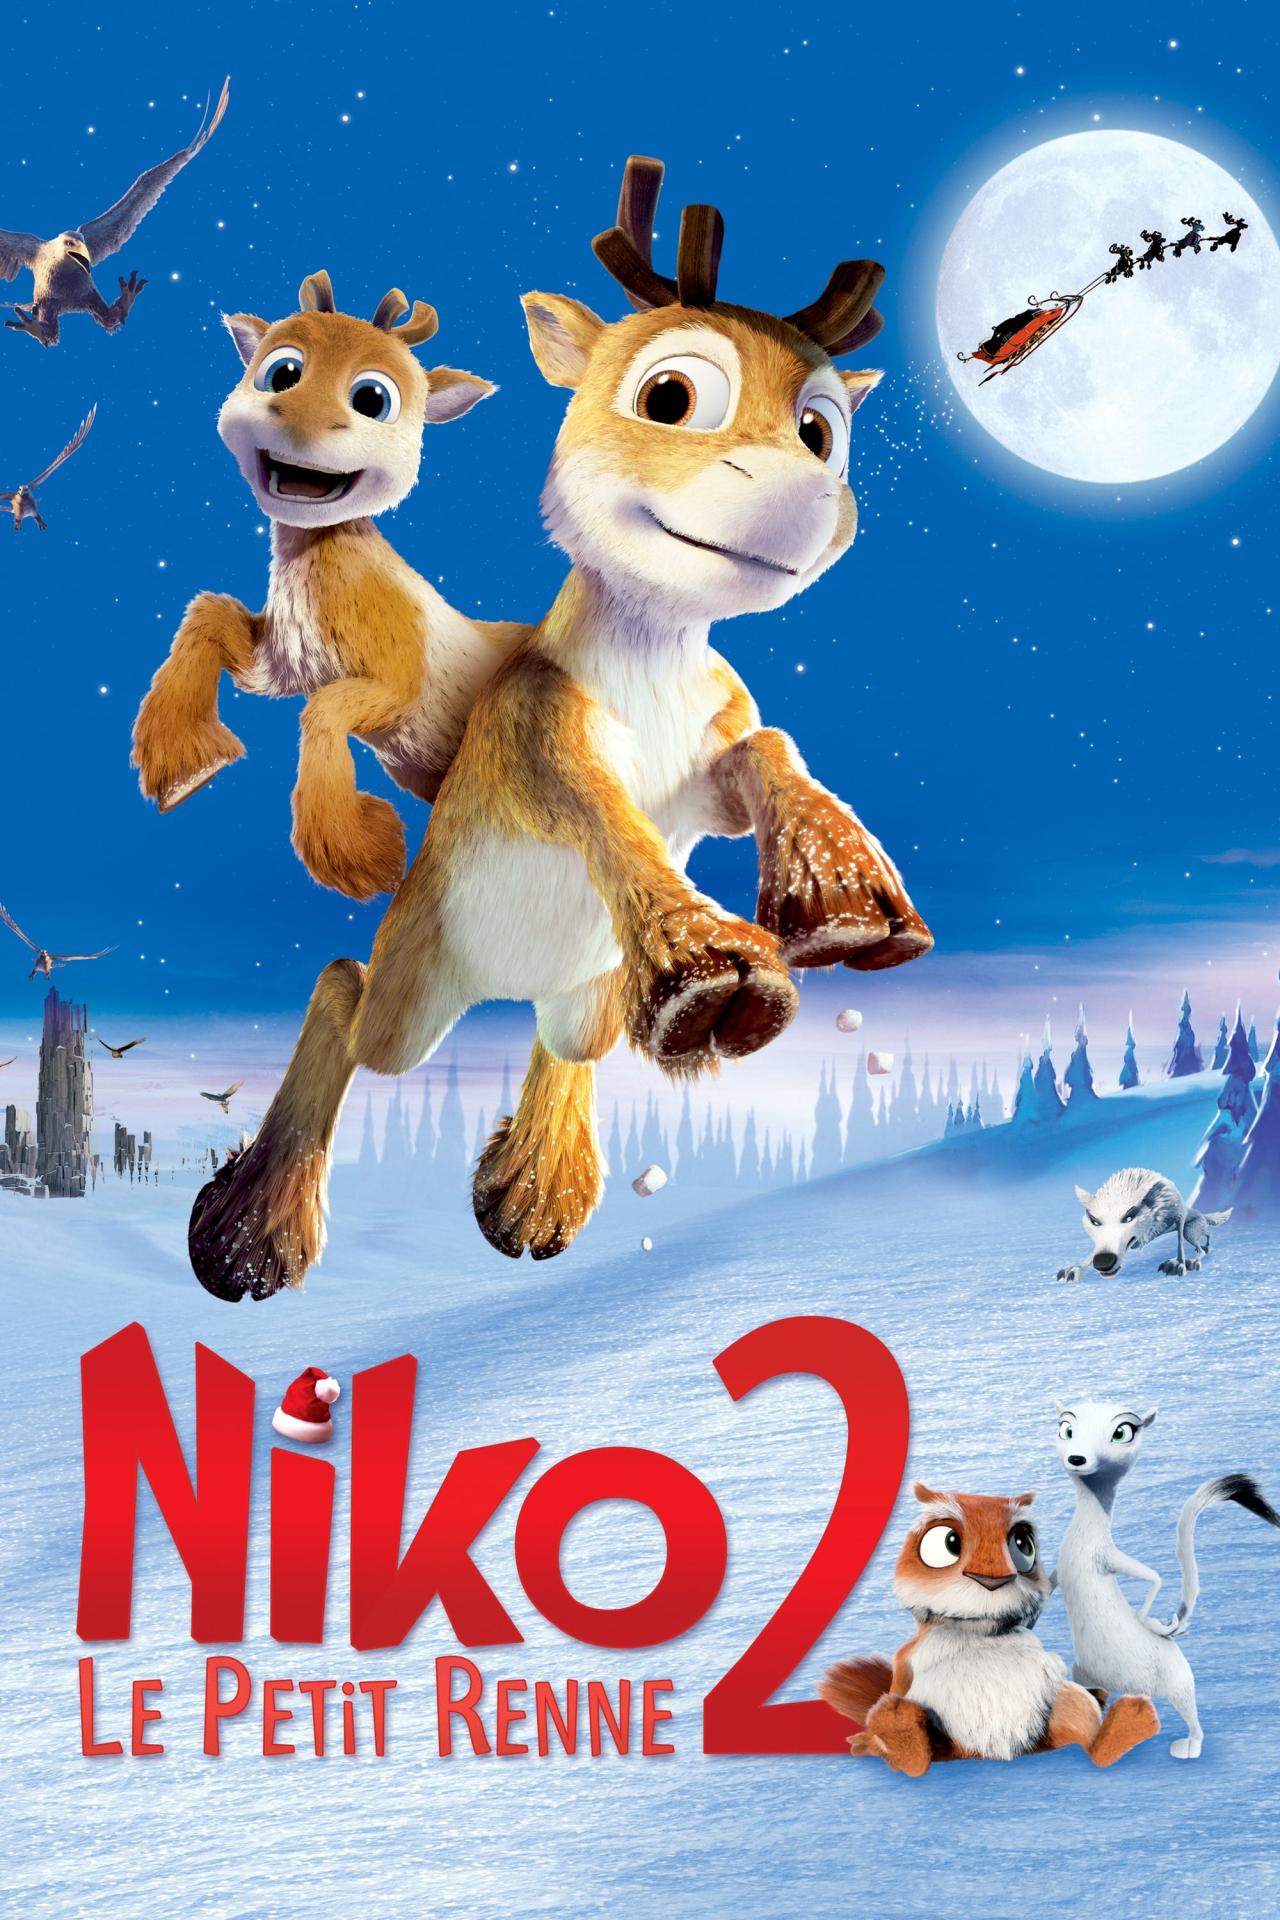 Niko, le petit renne 2 est-il disponible sur Netflix ou autre ?